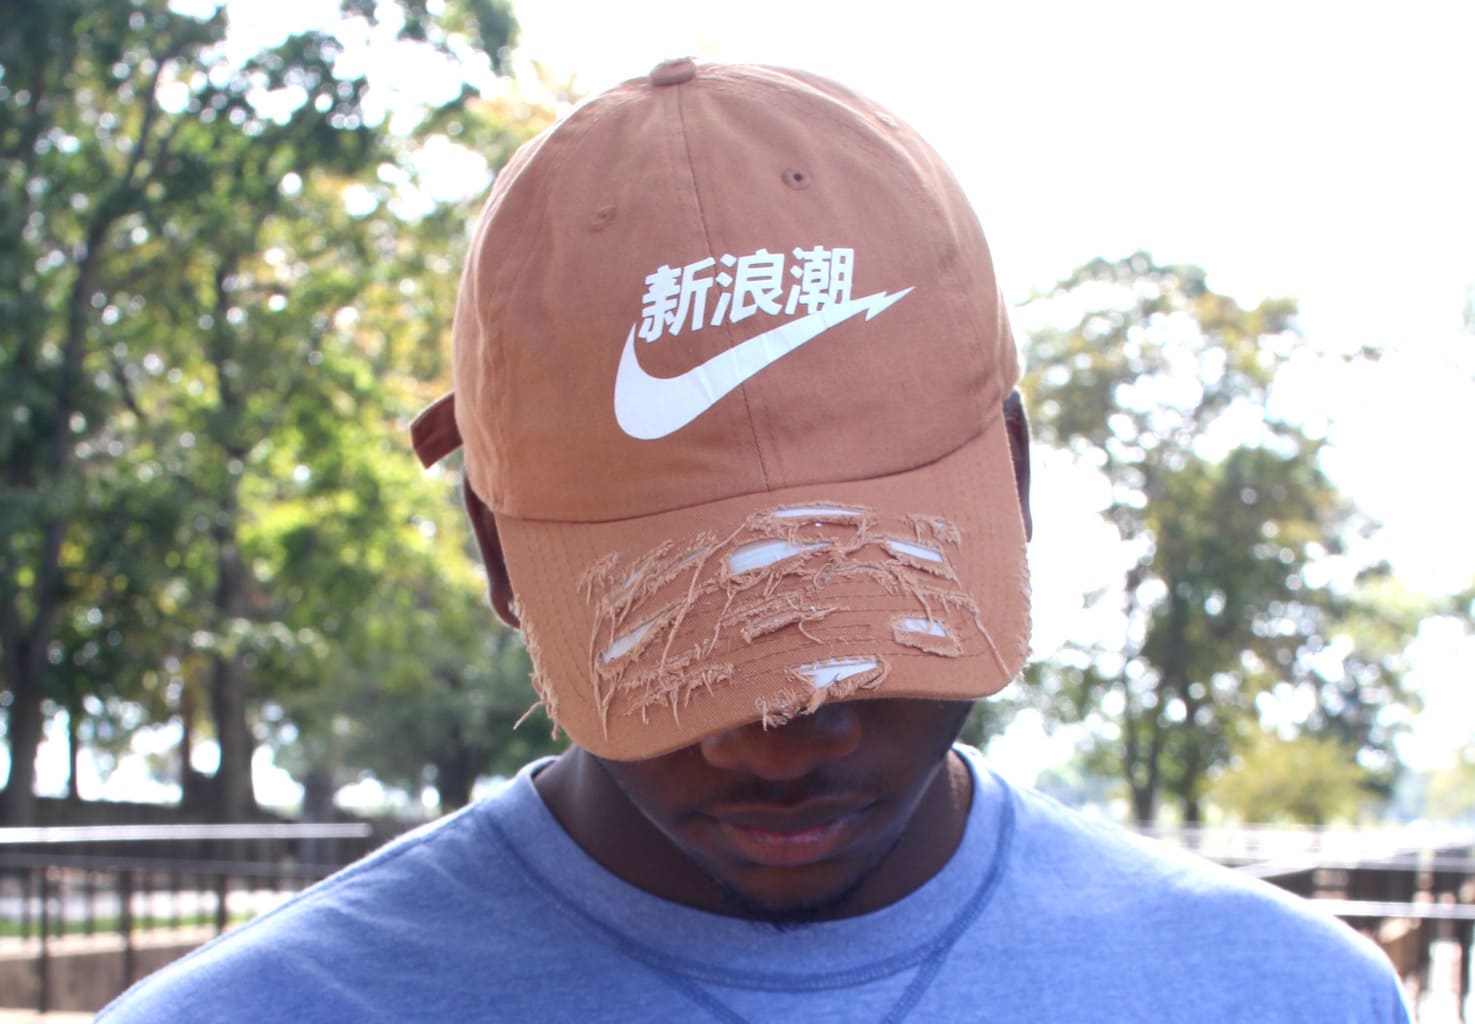 Custom screenprinted and shredded orange baseball cap.